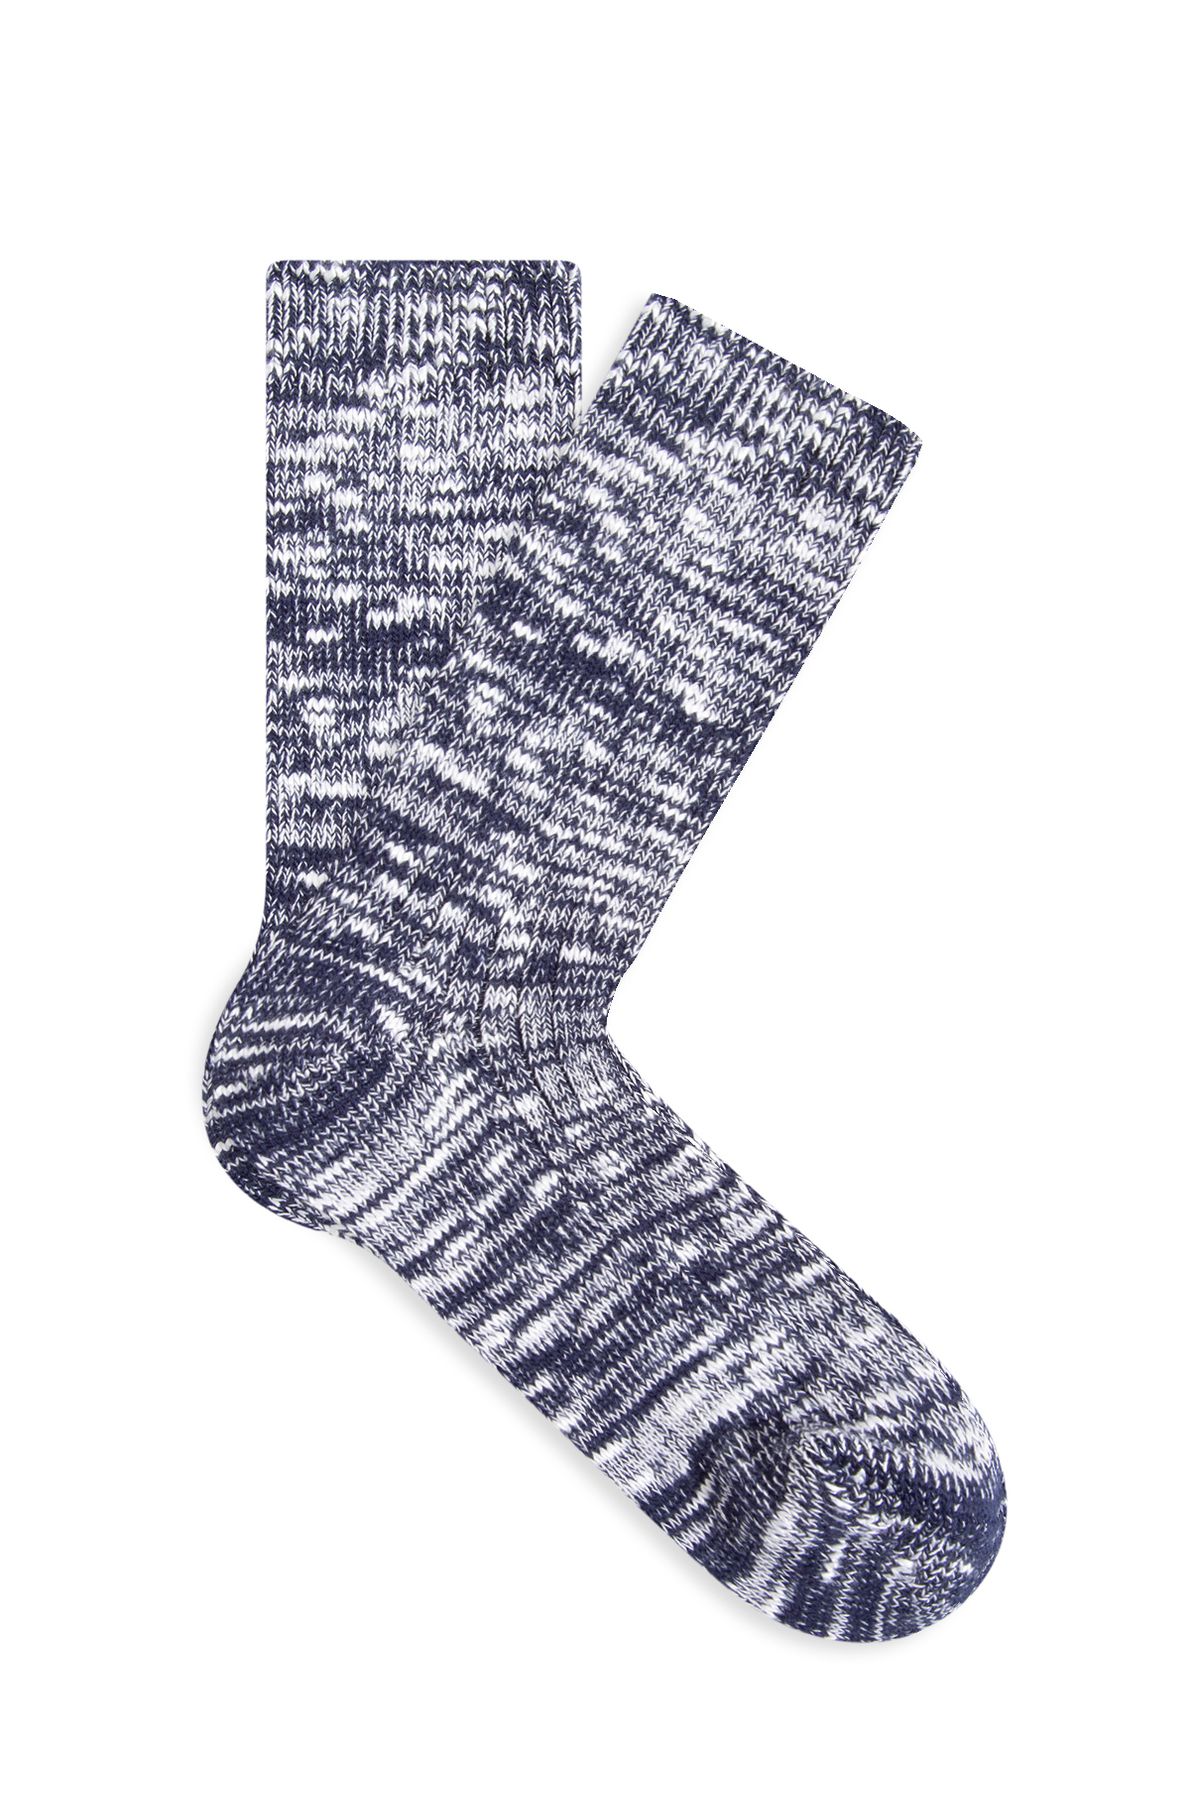 Mavi Lacivert Bot Çorabı 1910928-30717